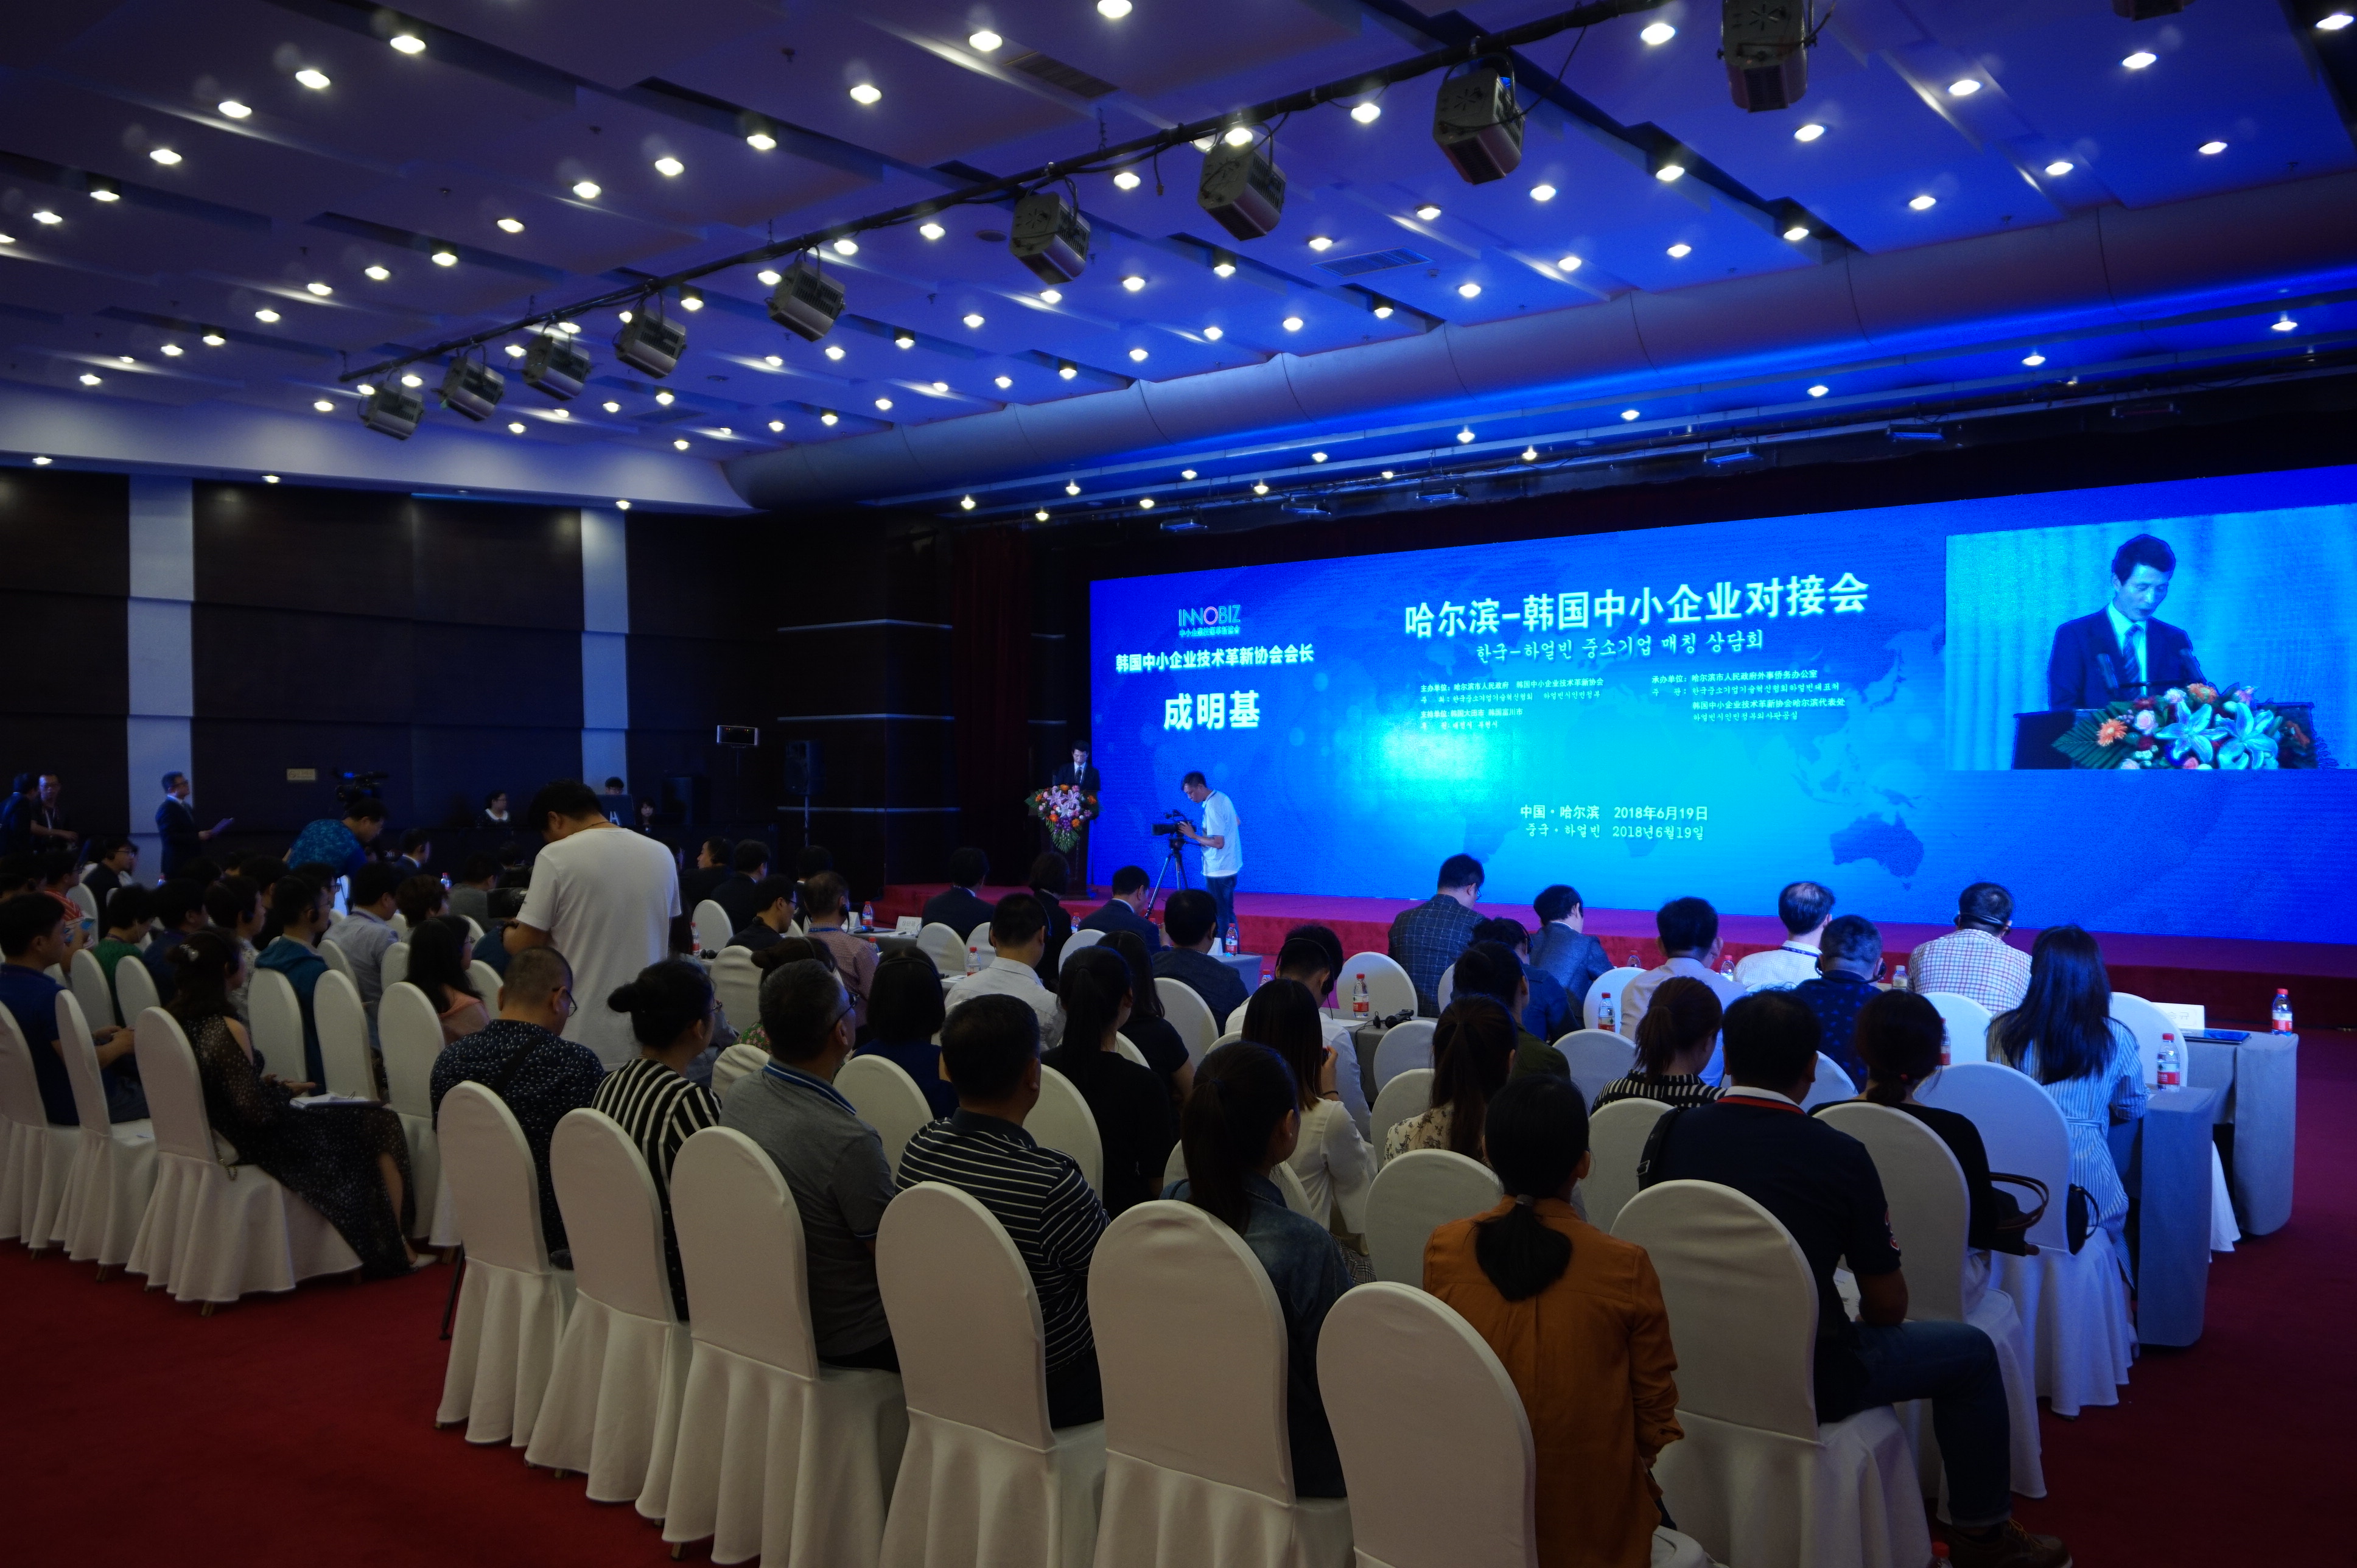 성명기 이노비즈협회 회장이 19일 중국 하얼빈 국제컨벤션센터에서 열린 한.중 기업상담회에서 축사를 하고 있다. (이노비즈협회 제공)